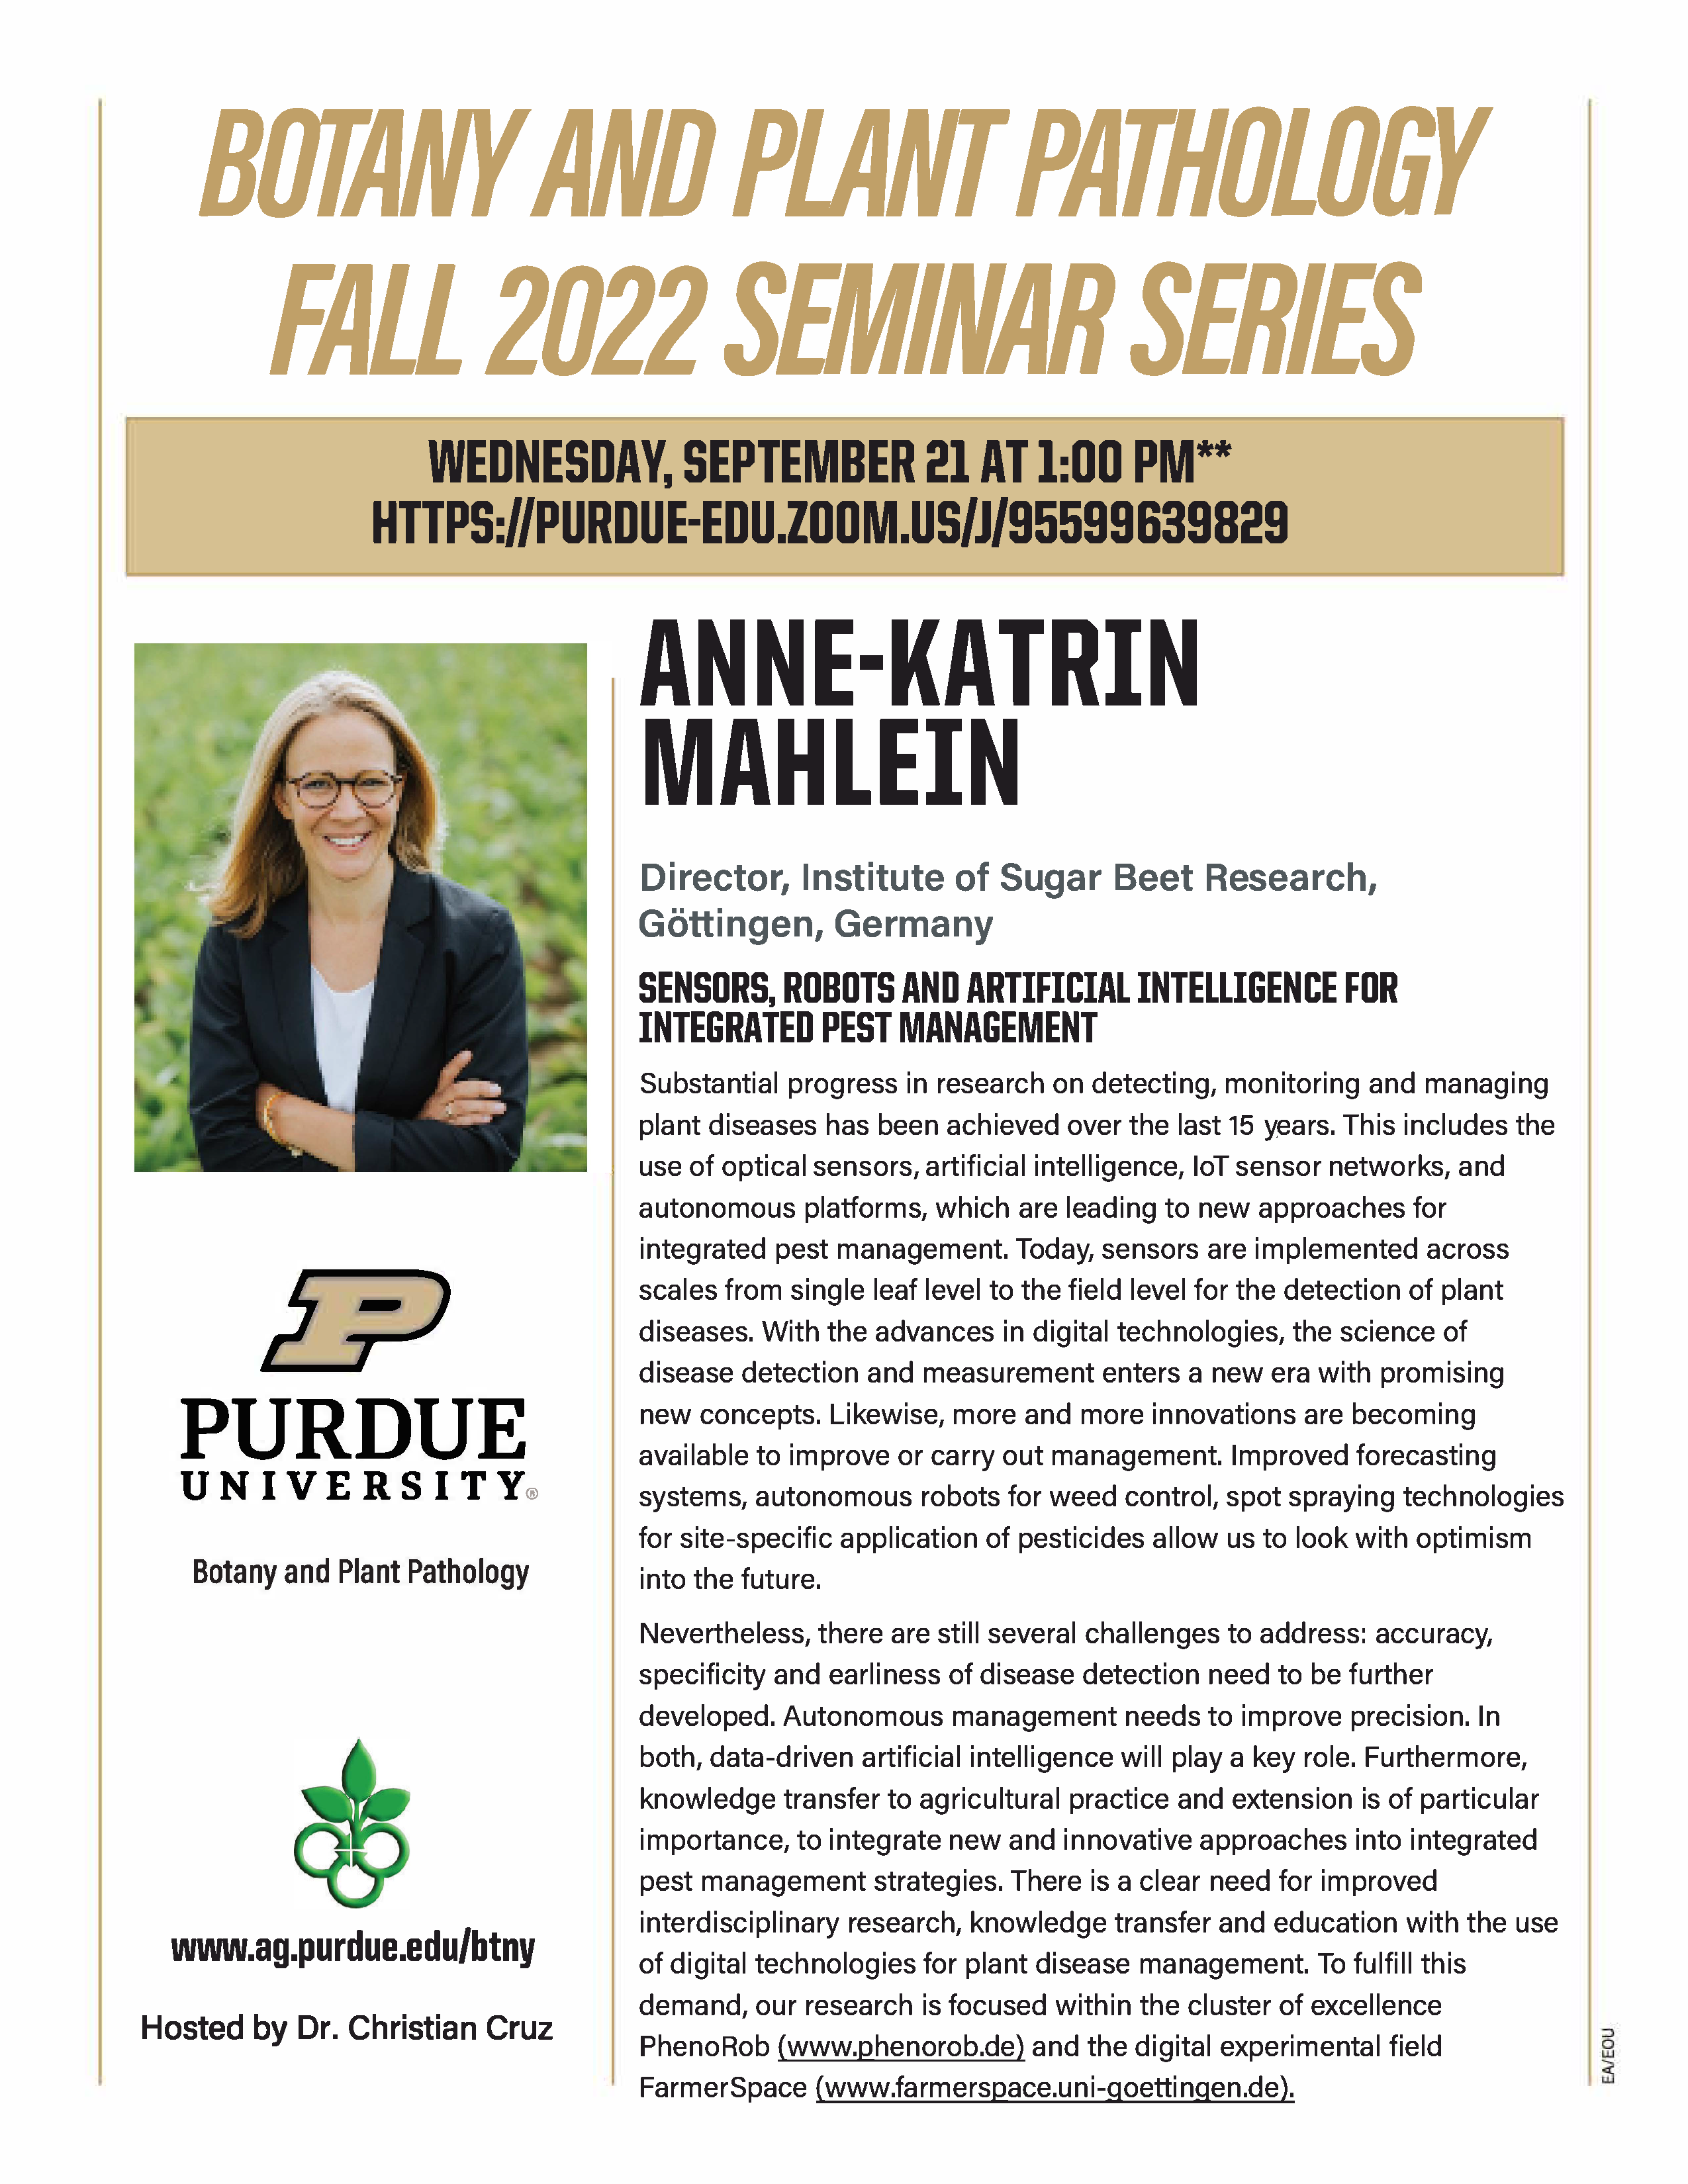 Anne-Katrin-Mahlein-Seminar-announcement-002.png